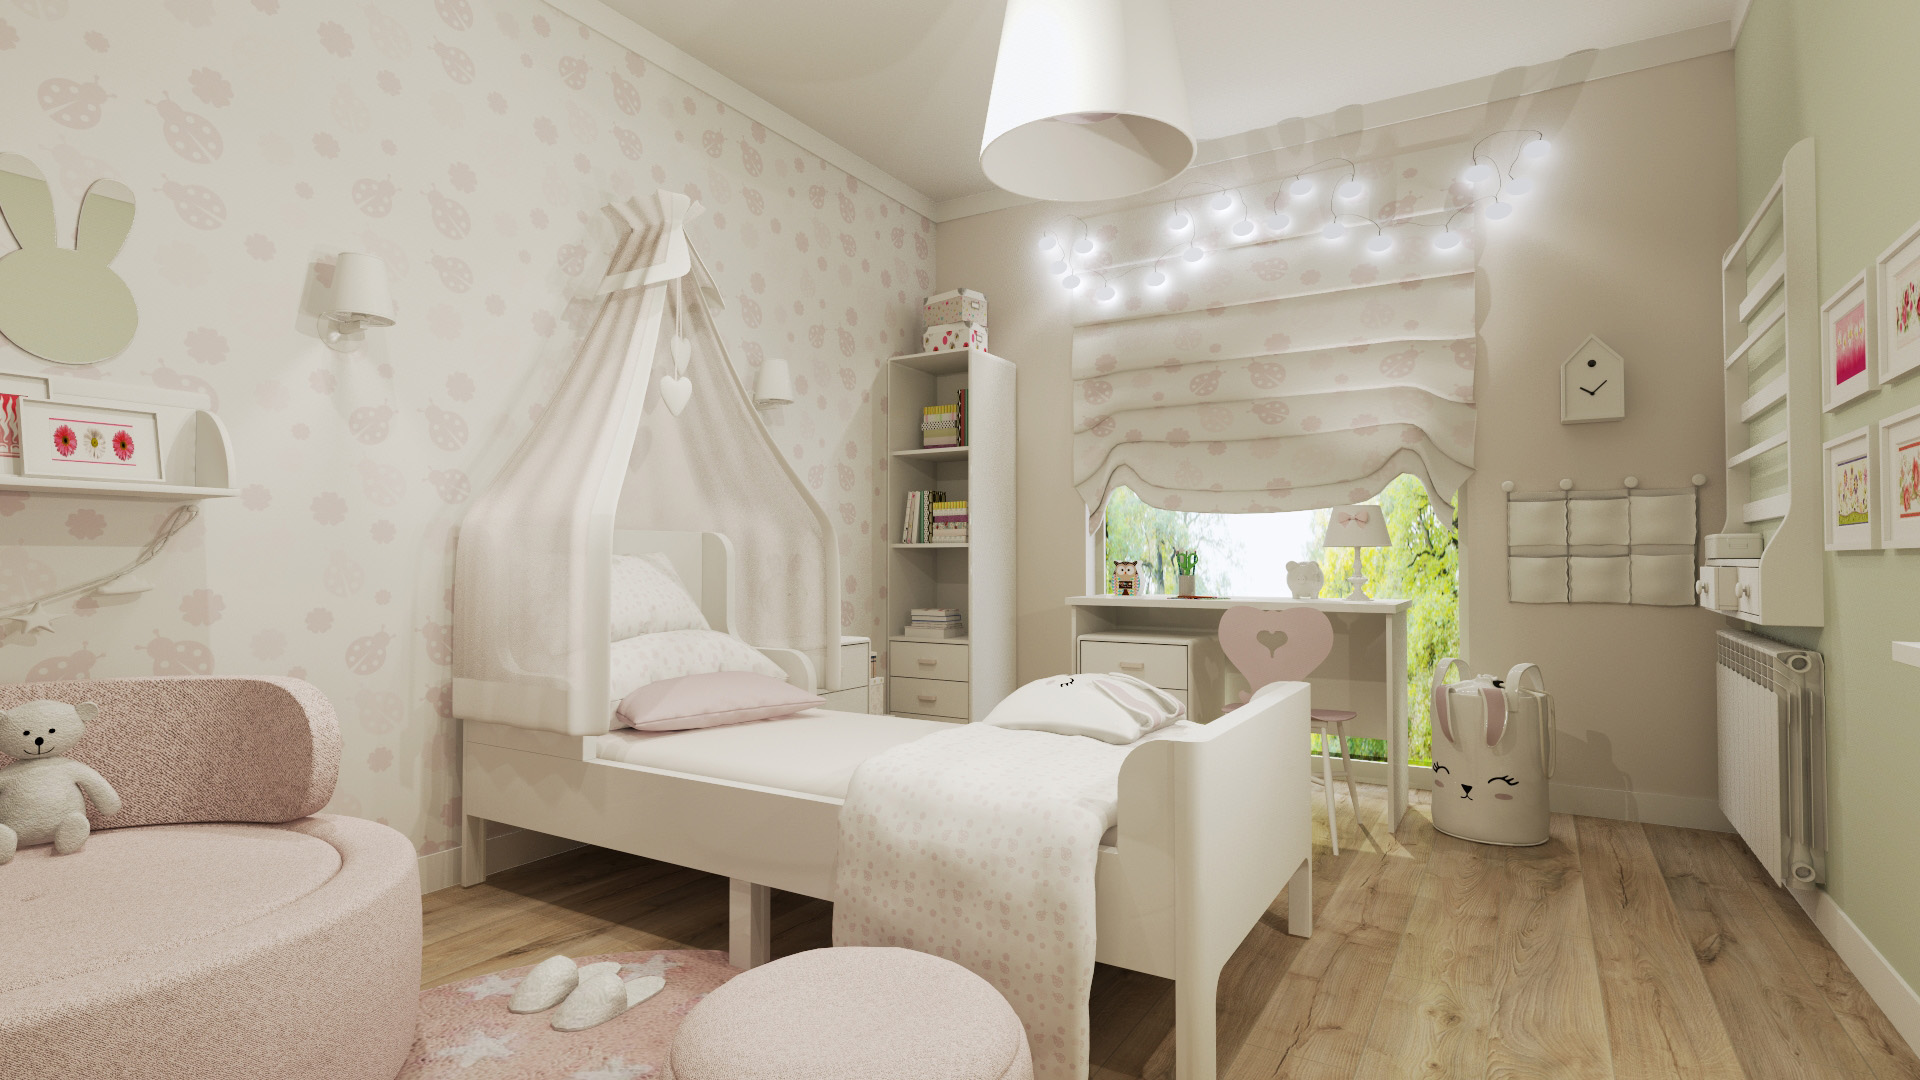 Camera da letto per la piccola principessa - Bea Design